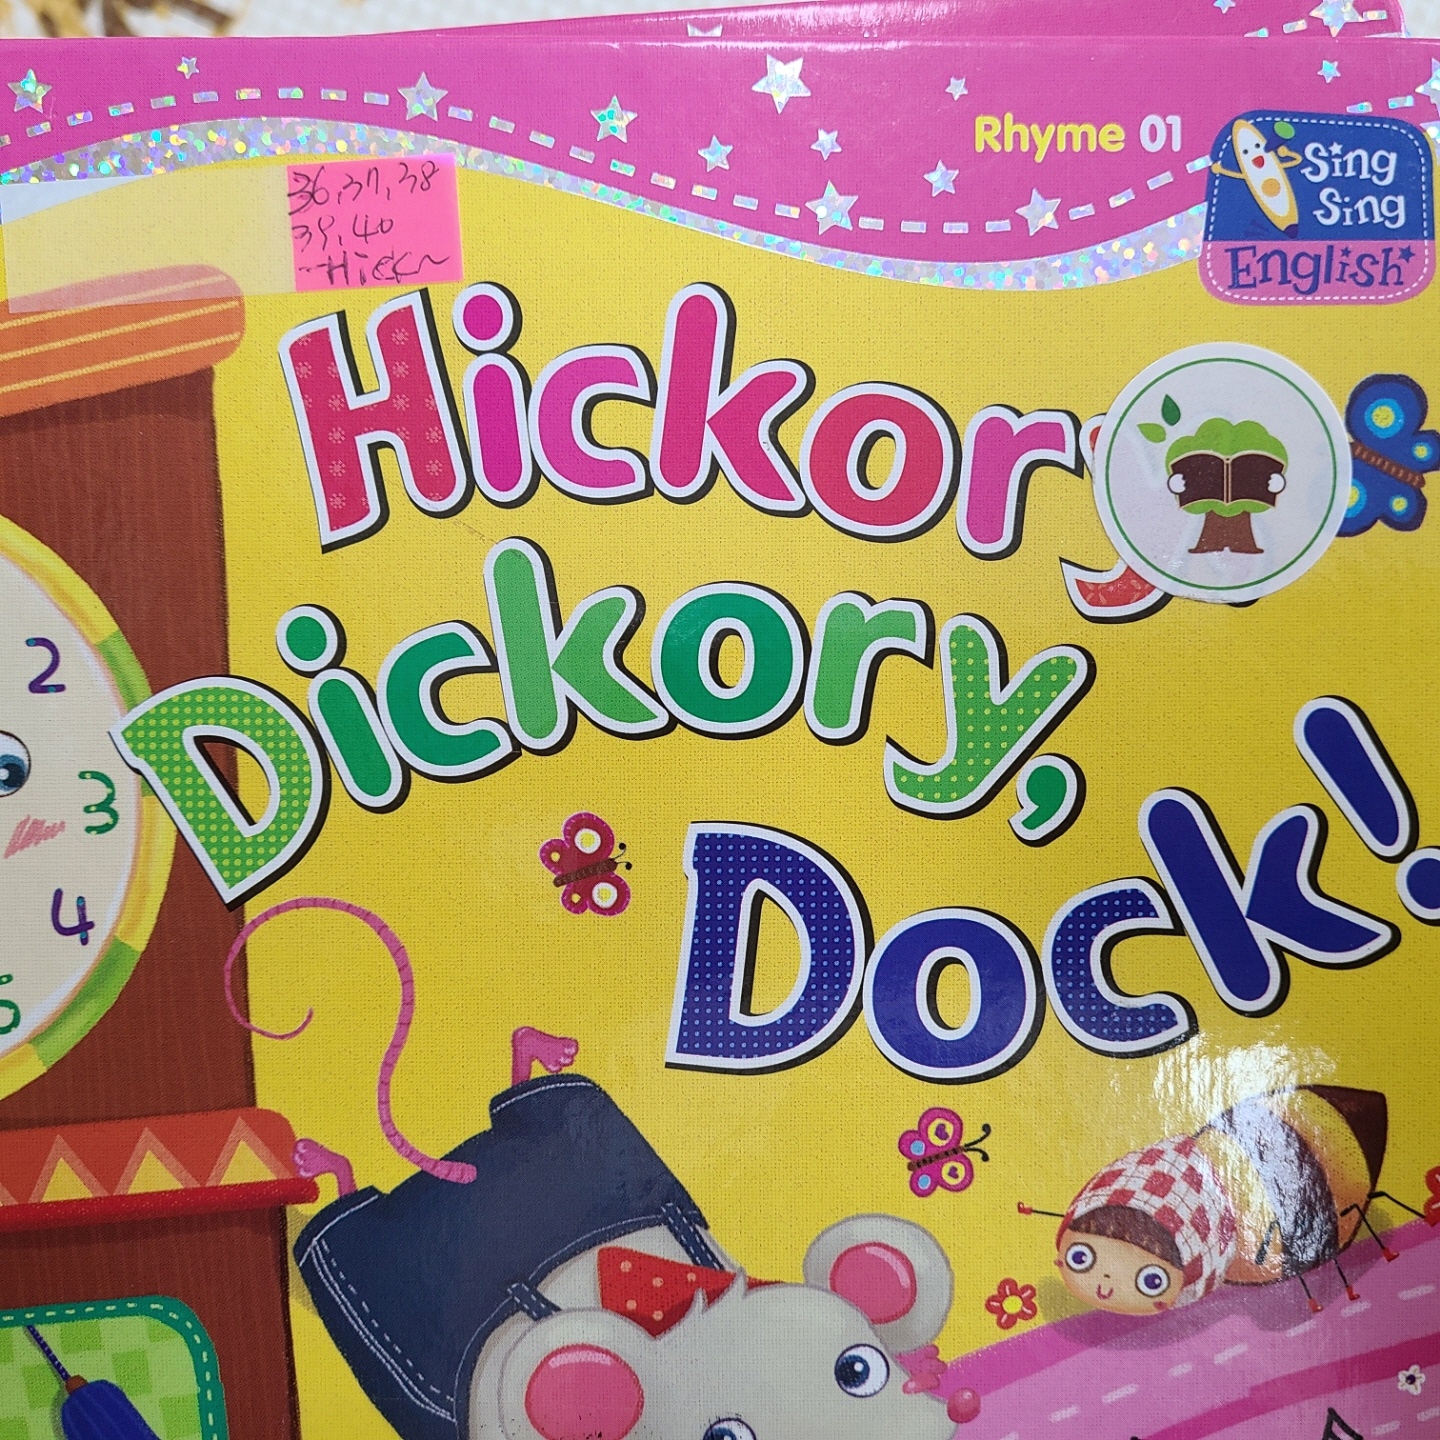 씽씽 영어 Rhyme 01 Hickory, Dickory, Dock!